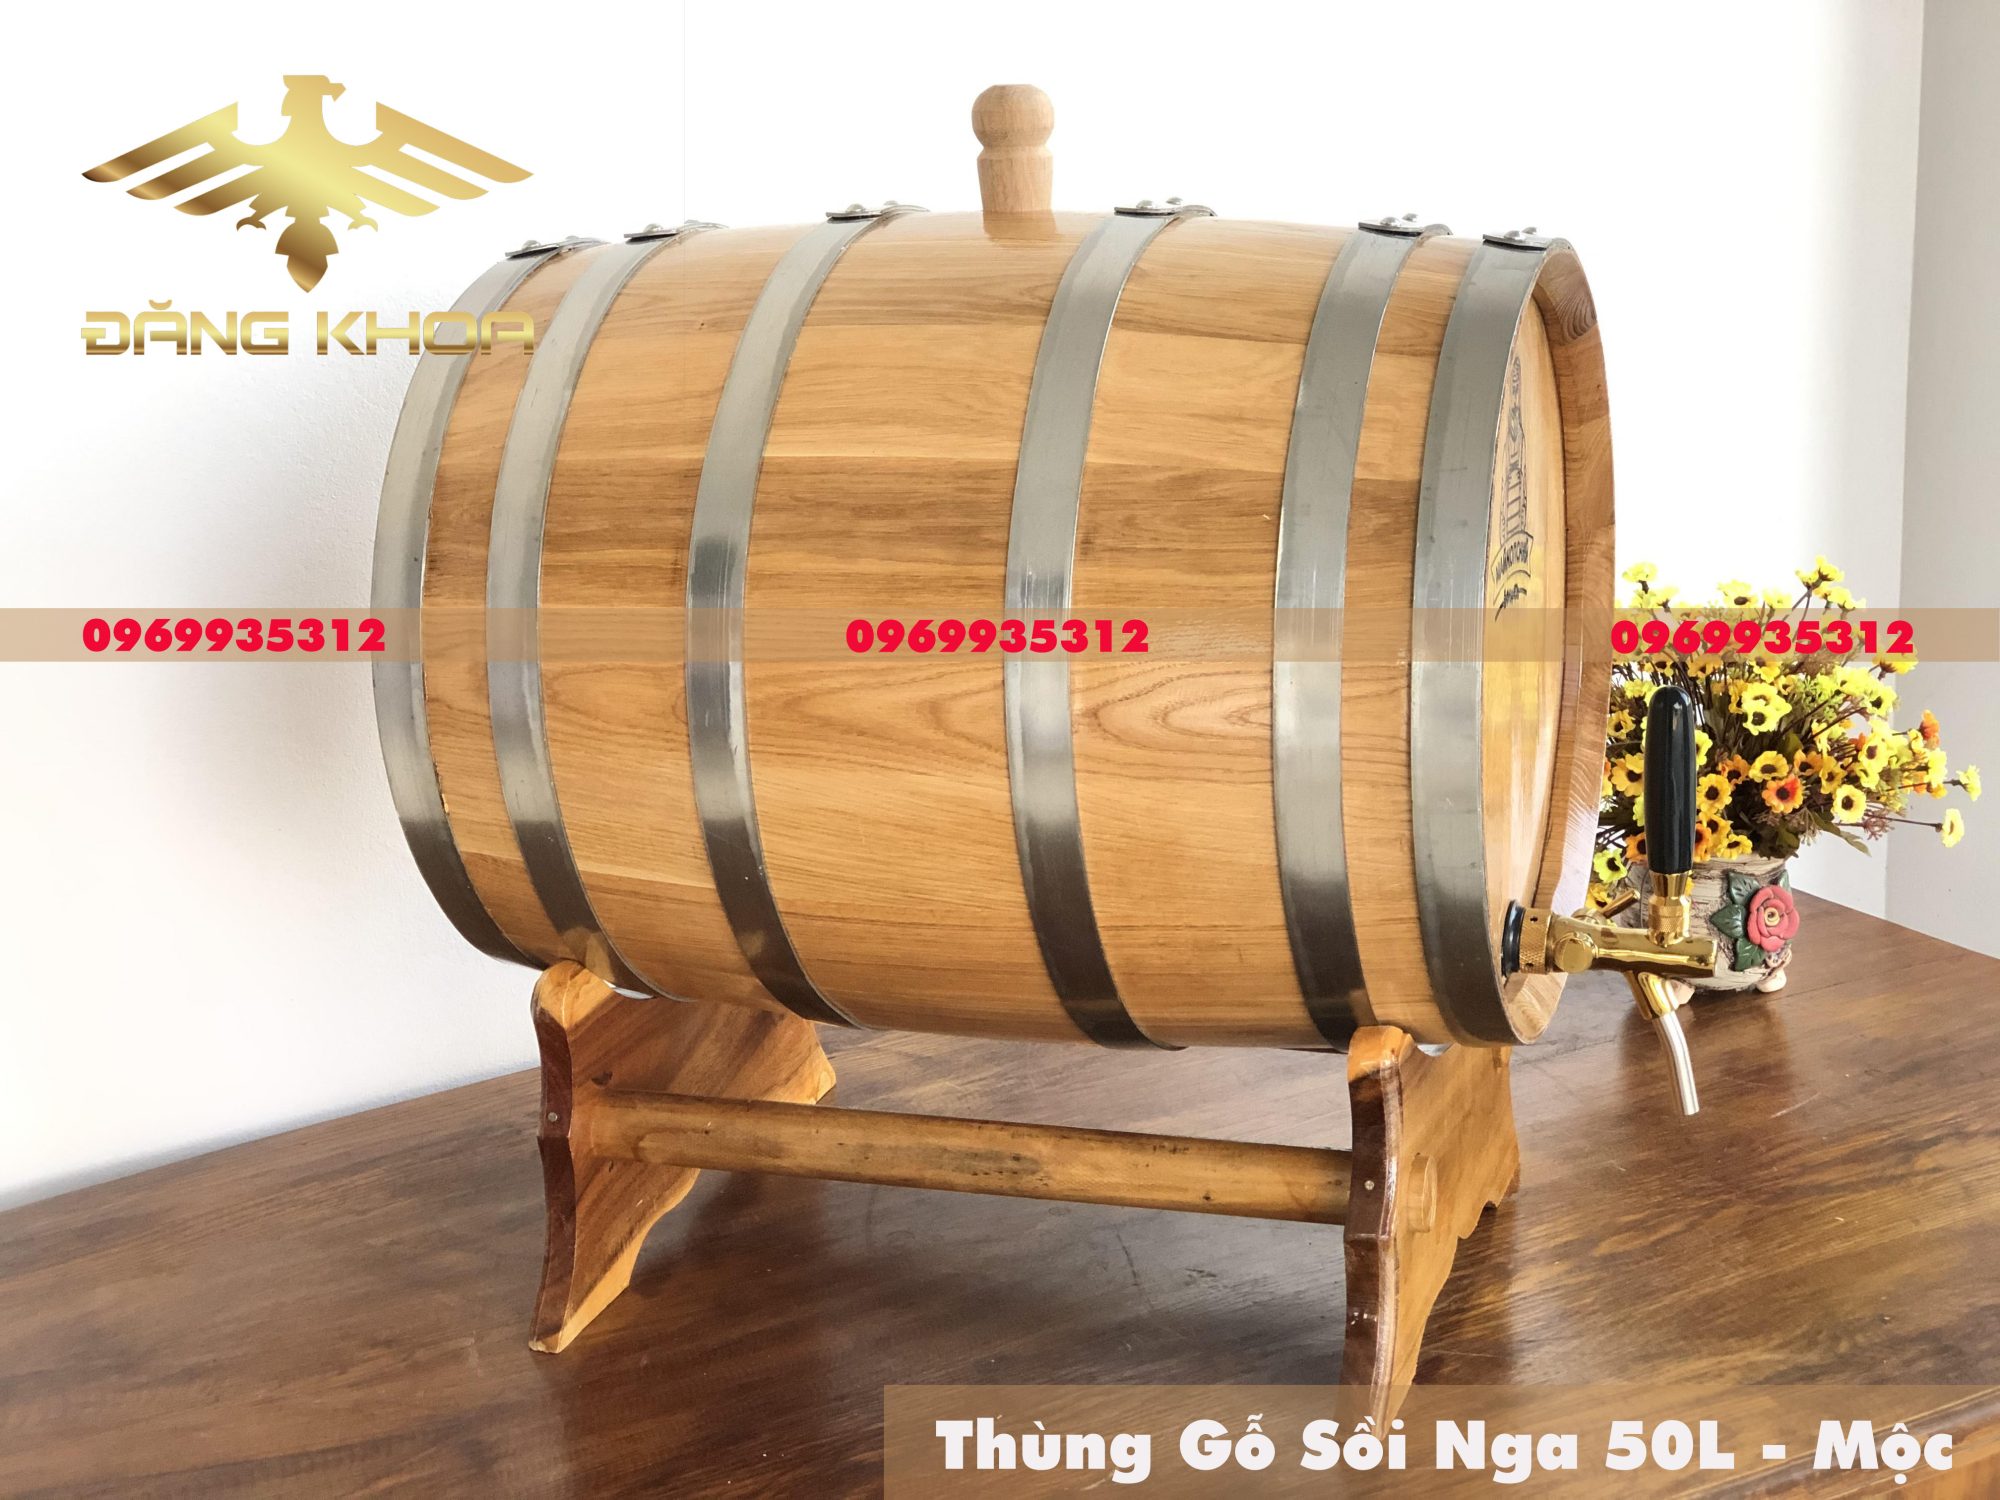 Tổng quan về đặc điểm của thùng rượu gỗ sồi